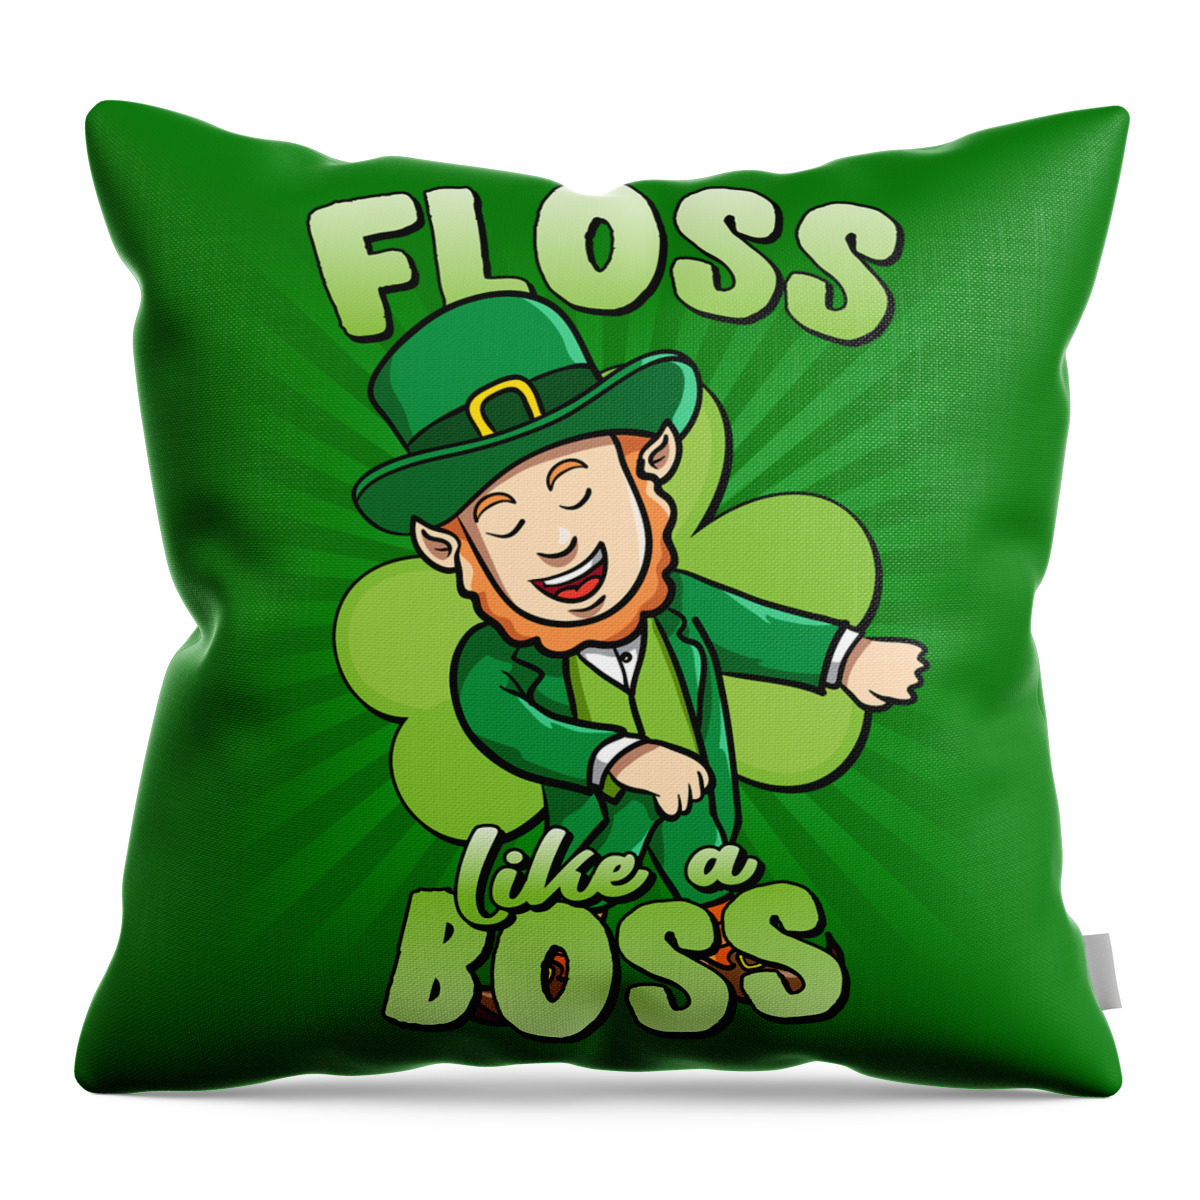 Cool Throw Pillow featuring the digital art Floss Like a Boss St Patricks Day Leprechaun by Flippin Sweet Gear